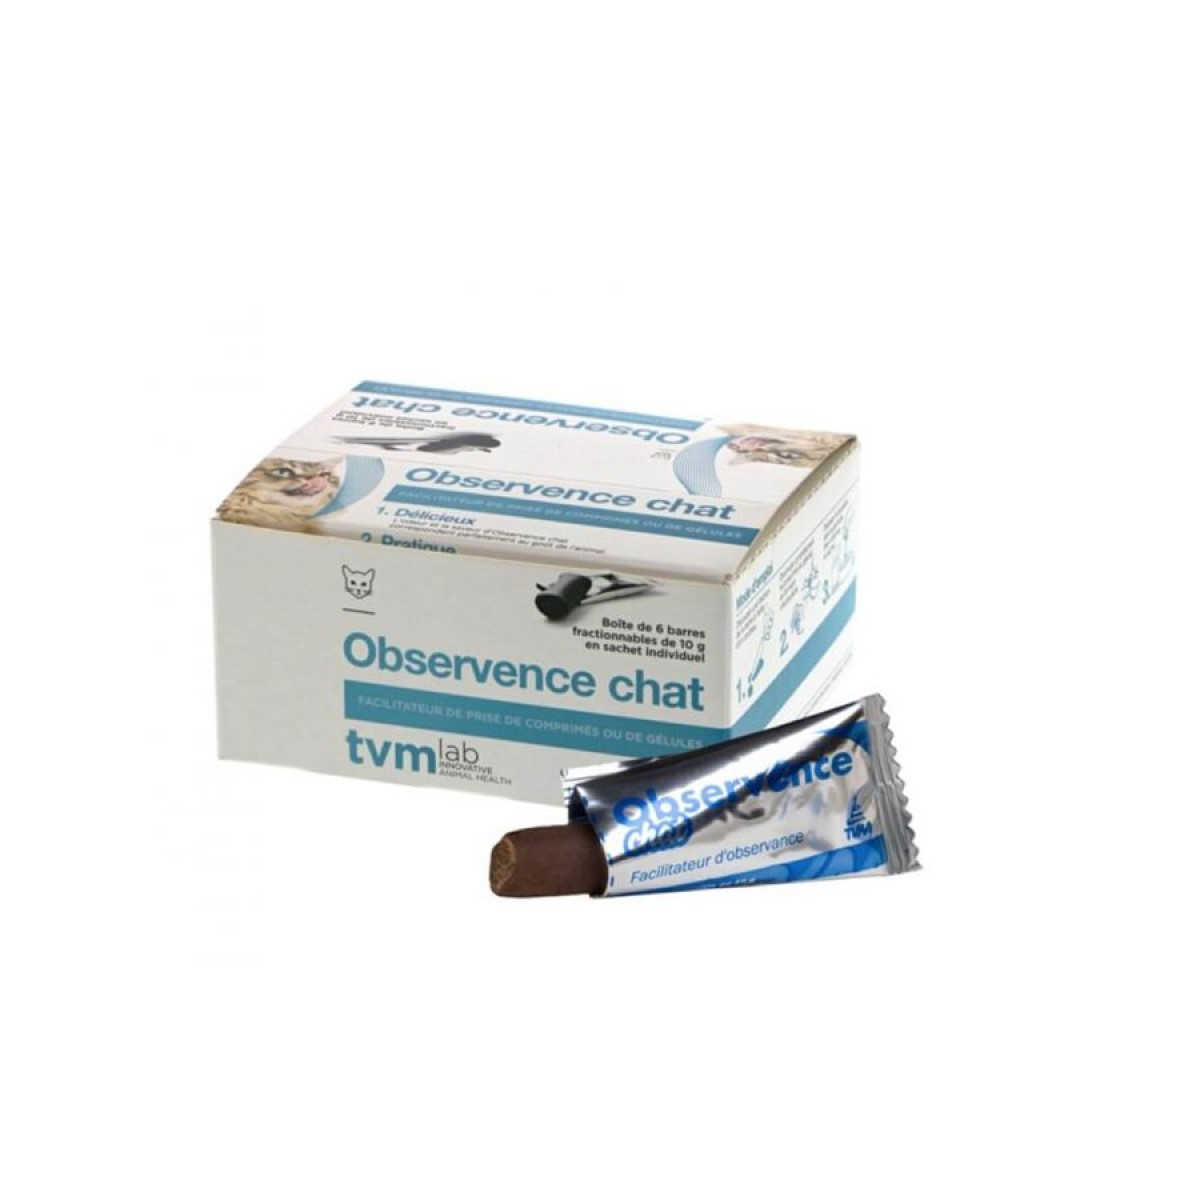 TVM Observence Barrette Gatti - Hilfsmittel zur Verabreichung von Arzneimitteln